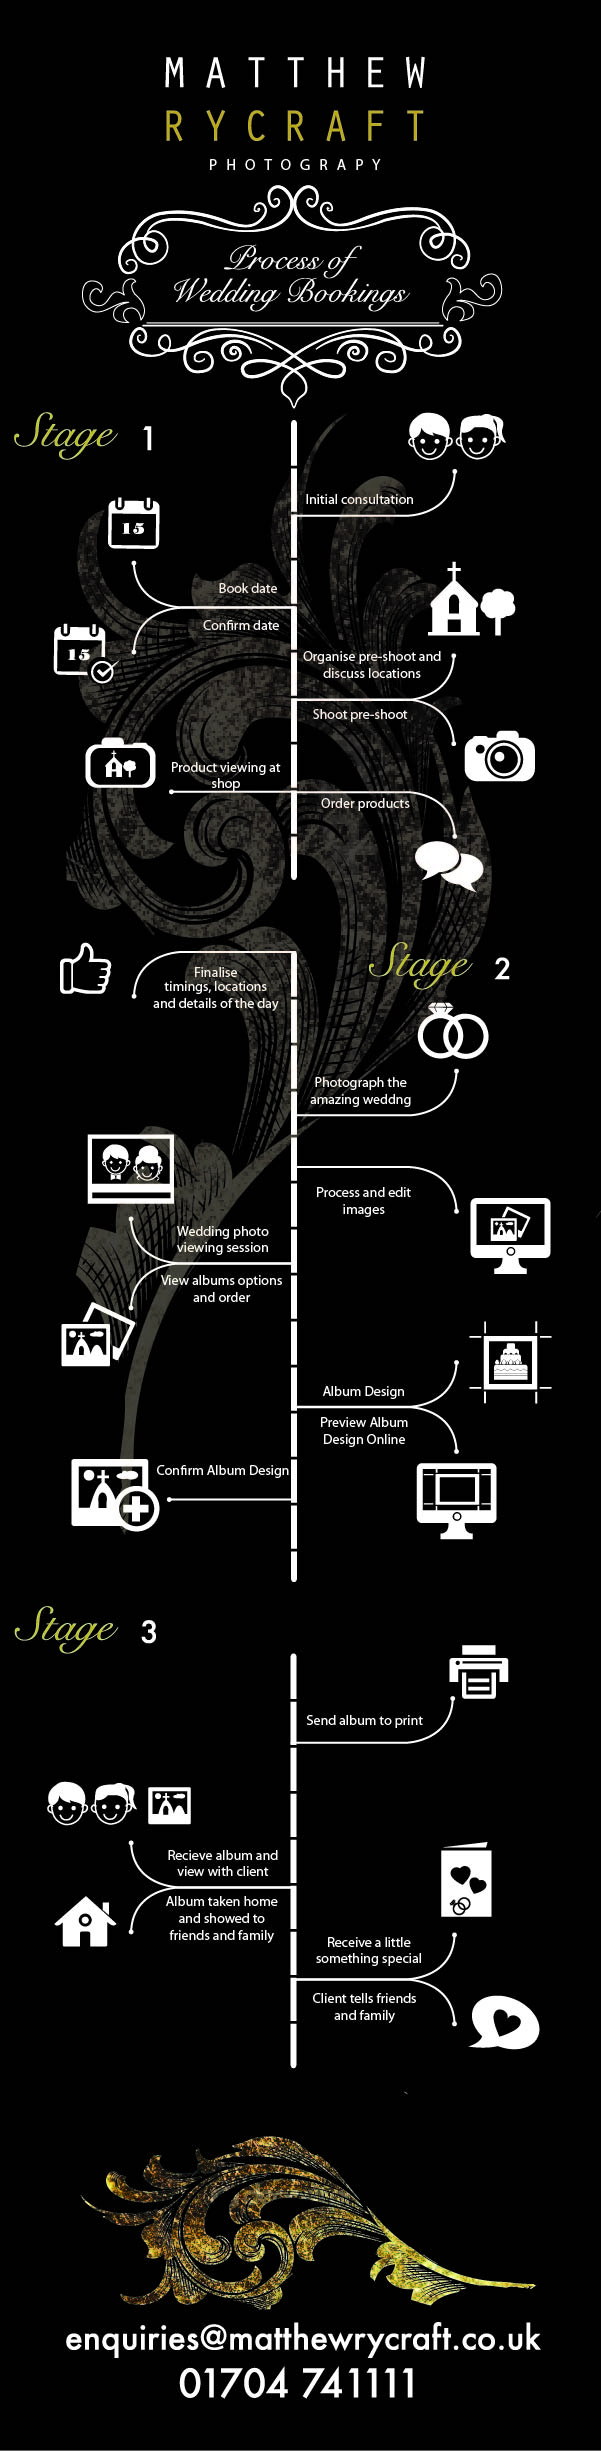 Matthew Rycraft Info Graphic